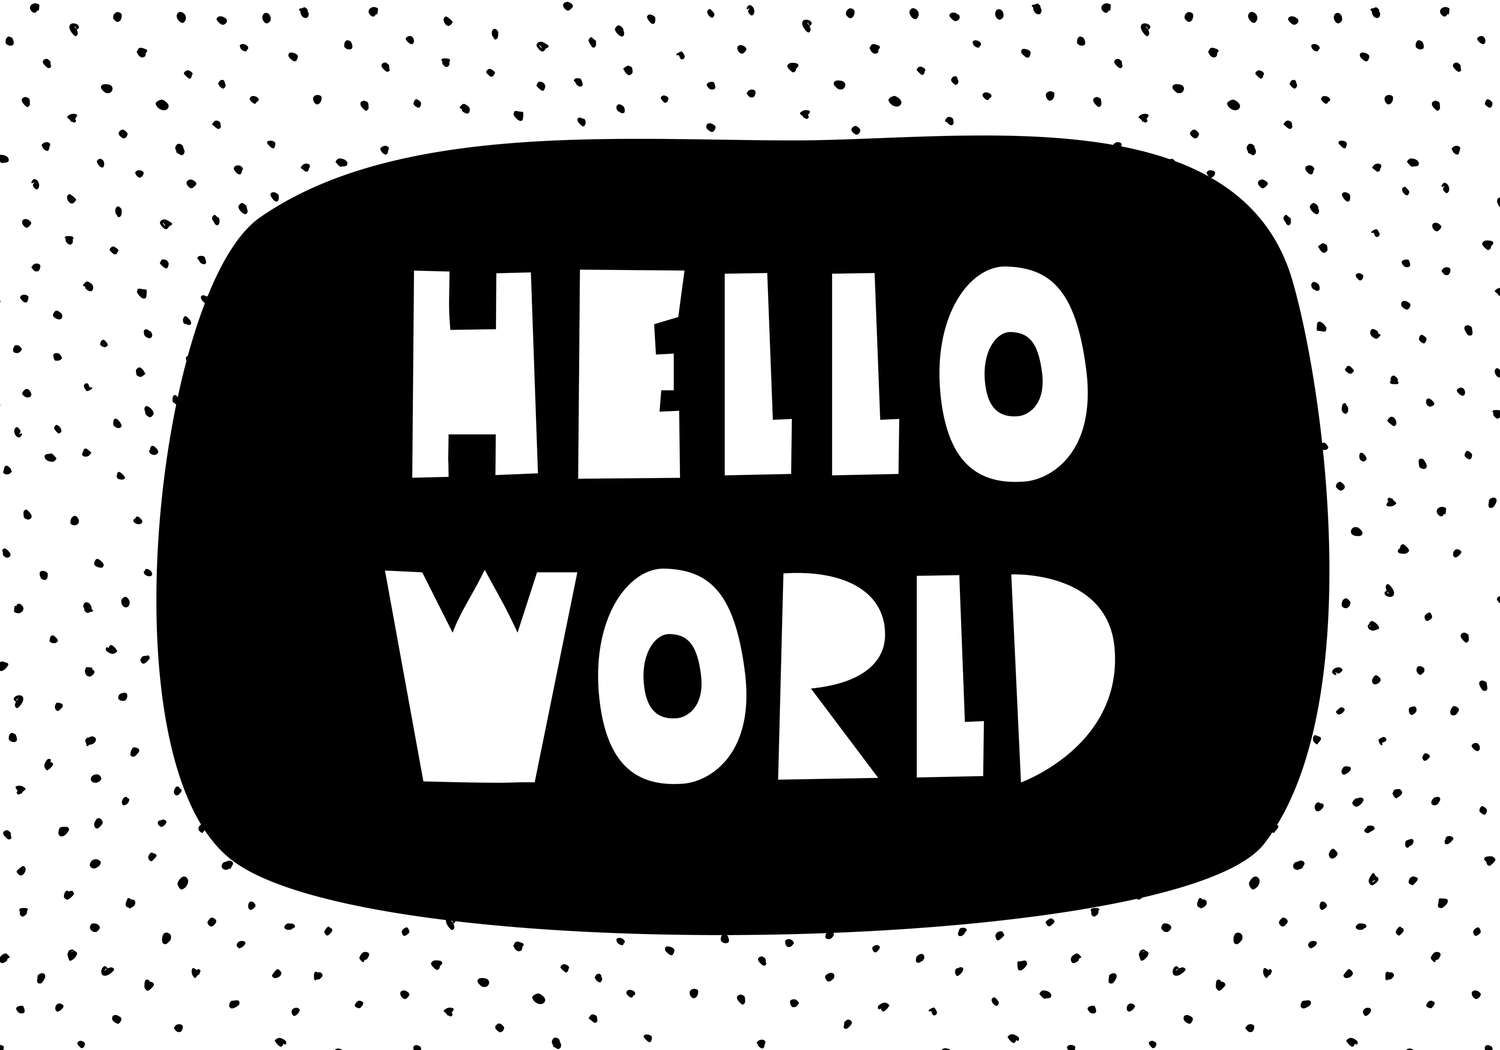             Fotomural para habitación infantil con letras "Hello World" - Fibra polar lisa y nacarada
        